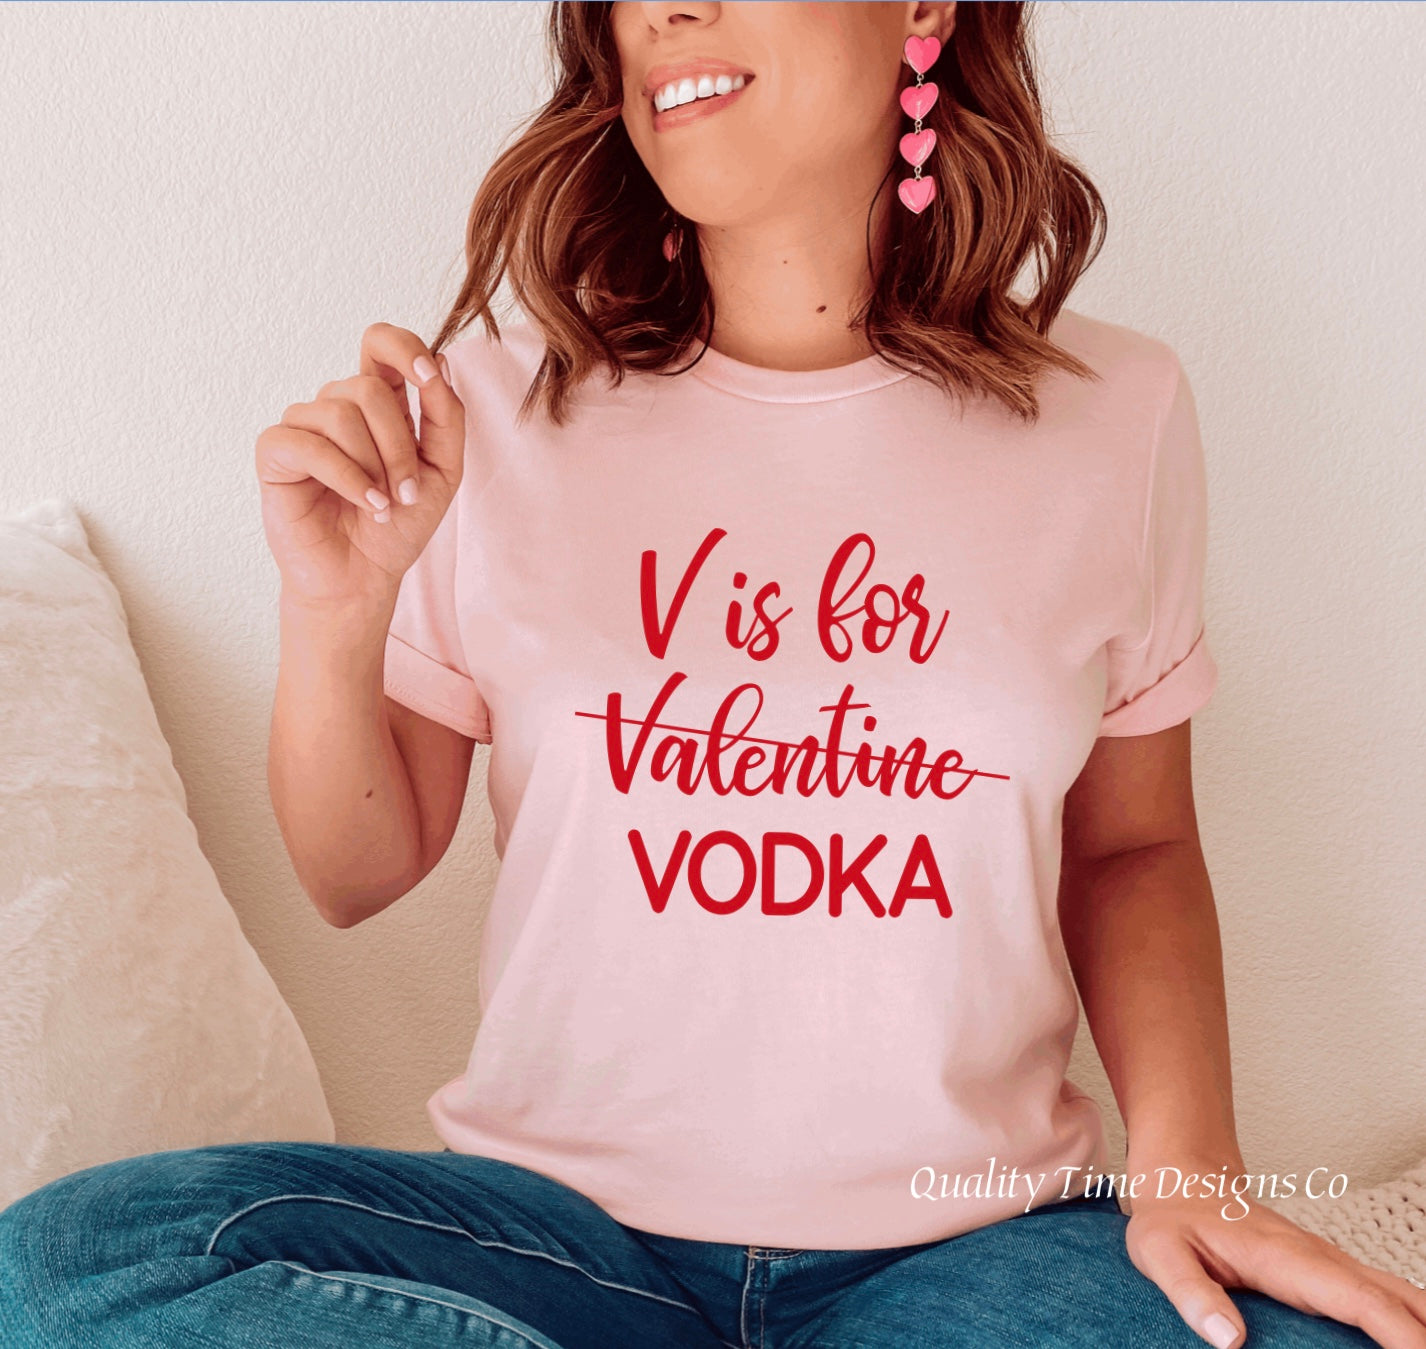 V is for Vodka t-shirt 